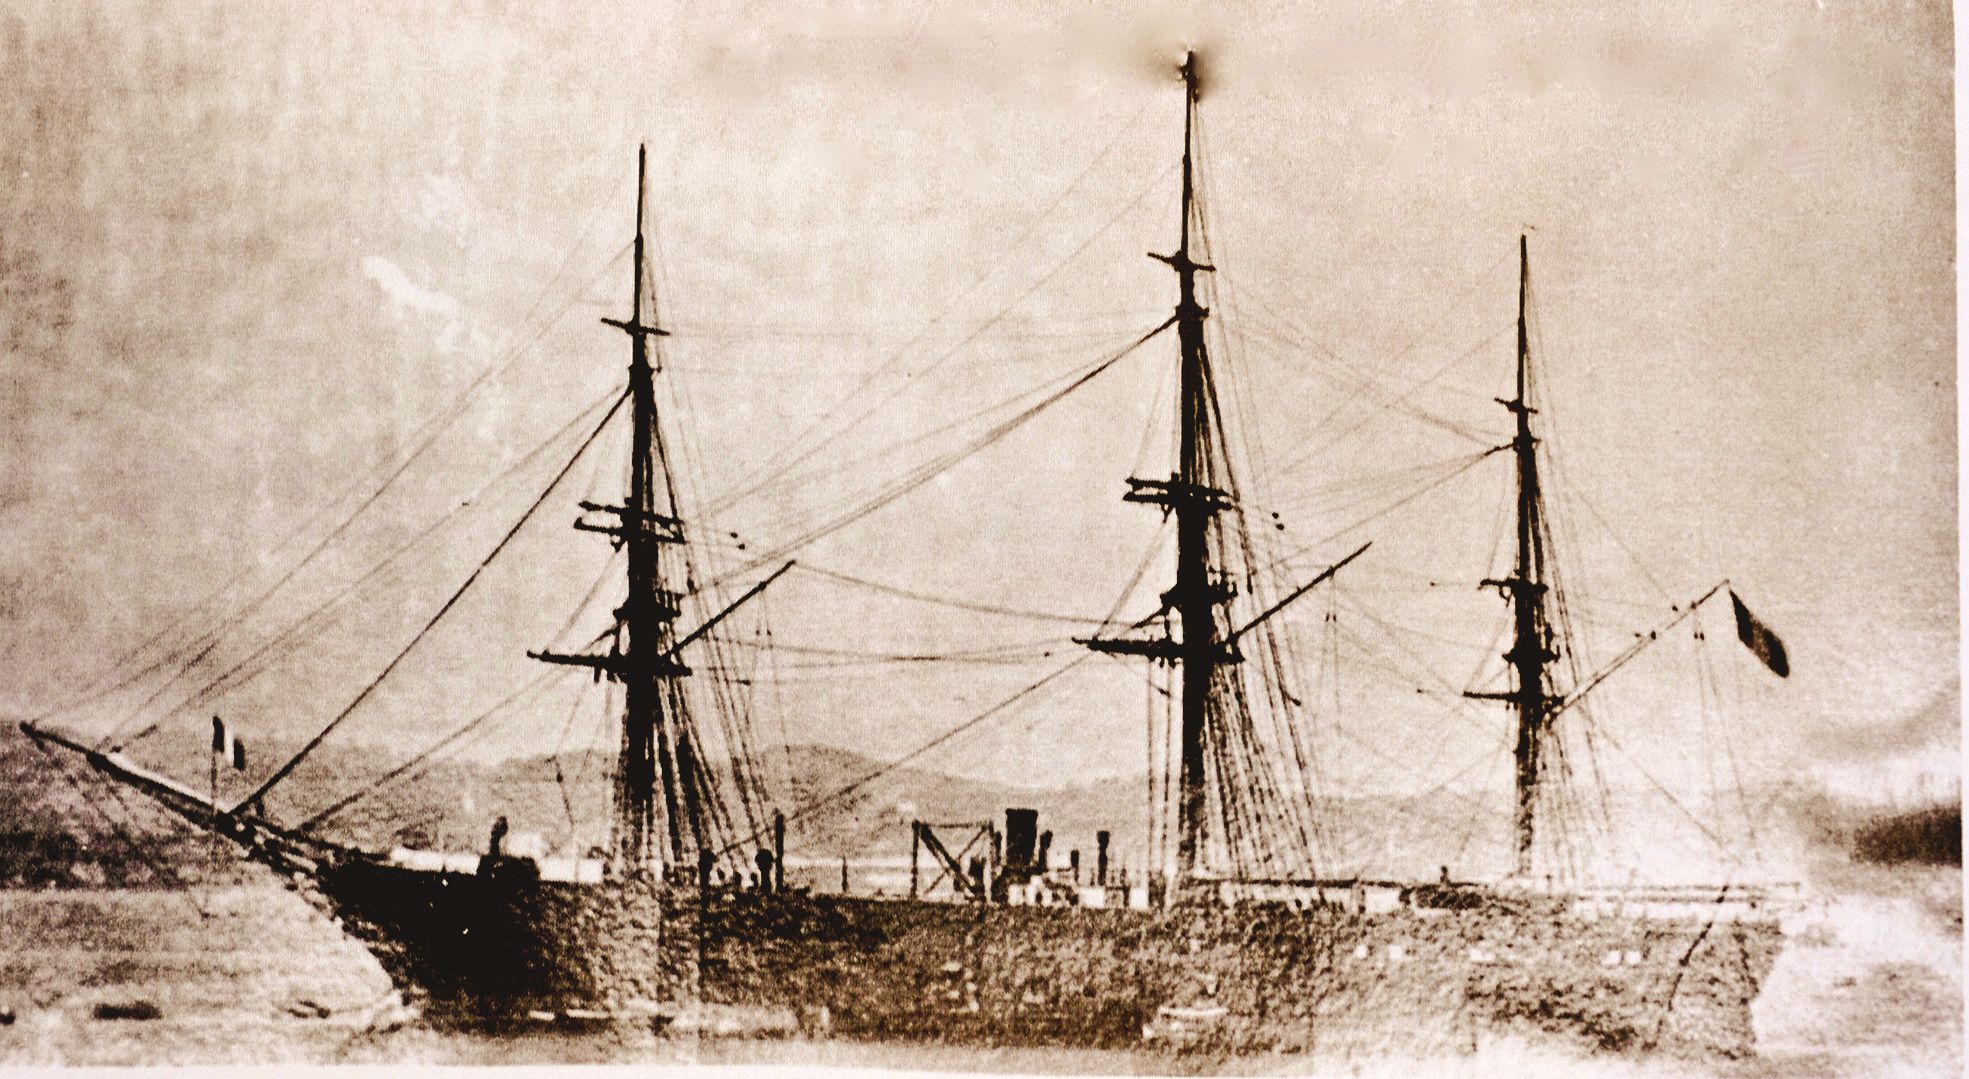 Le Jura, ce transport de la marine à propulsion mixte, emprunte, en 1872, la route par le canal de Suez au départ de Toulon. Il est immobilisé plusieurs jours à cause du mauvais temps près de l’île de Camaran, en mer Rouge, et met 145 jours pour arriver à